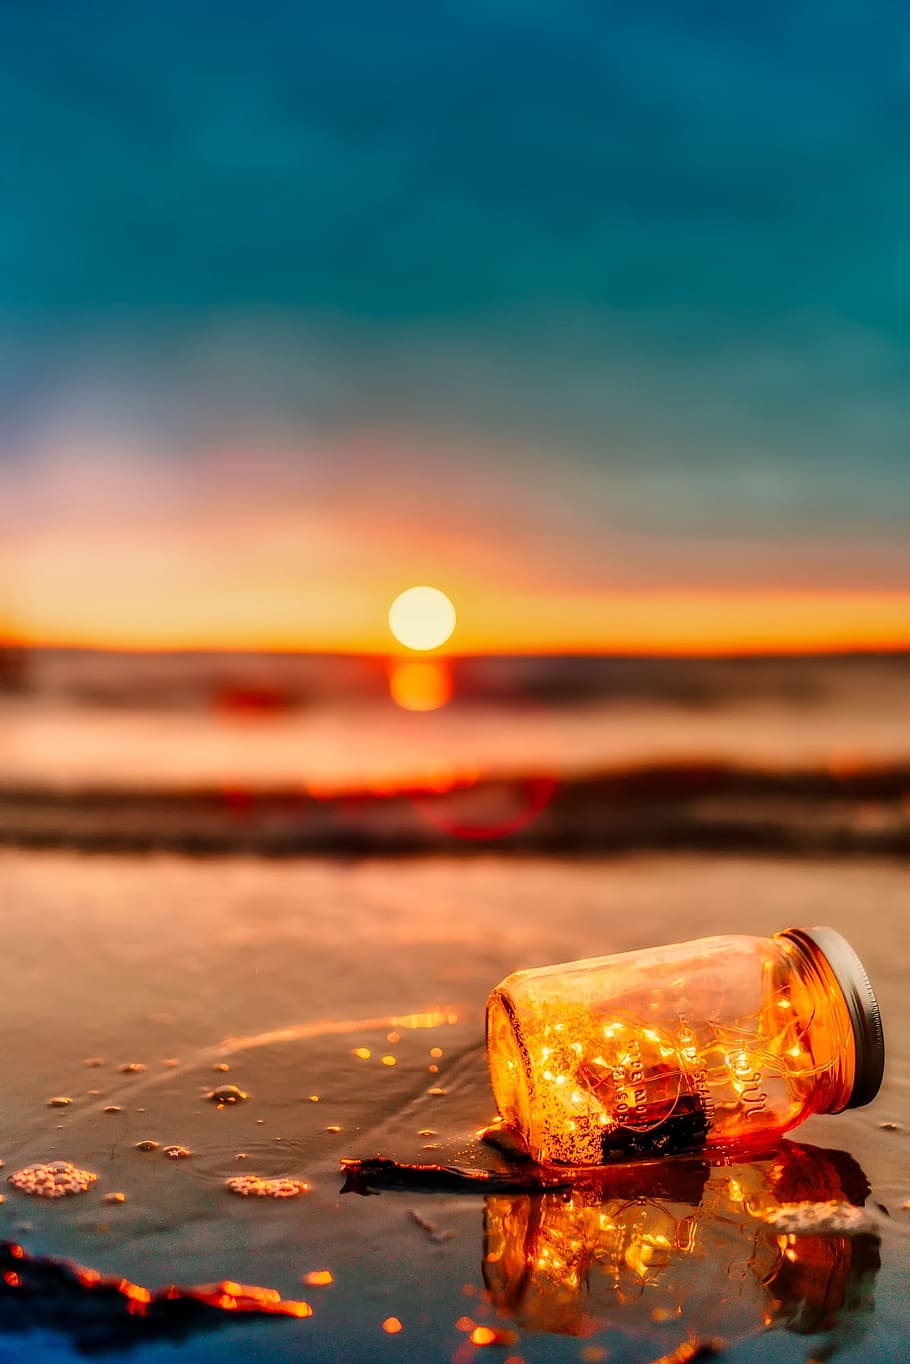 brown bottle on seashore during golden hour, sunset, dusk, ocean